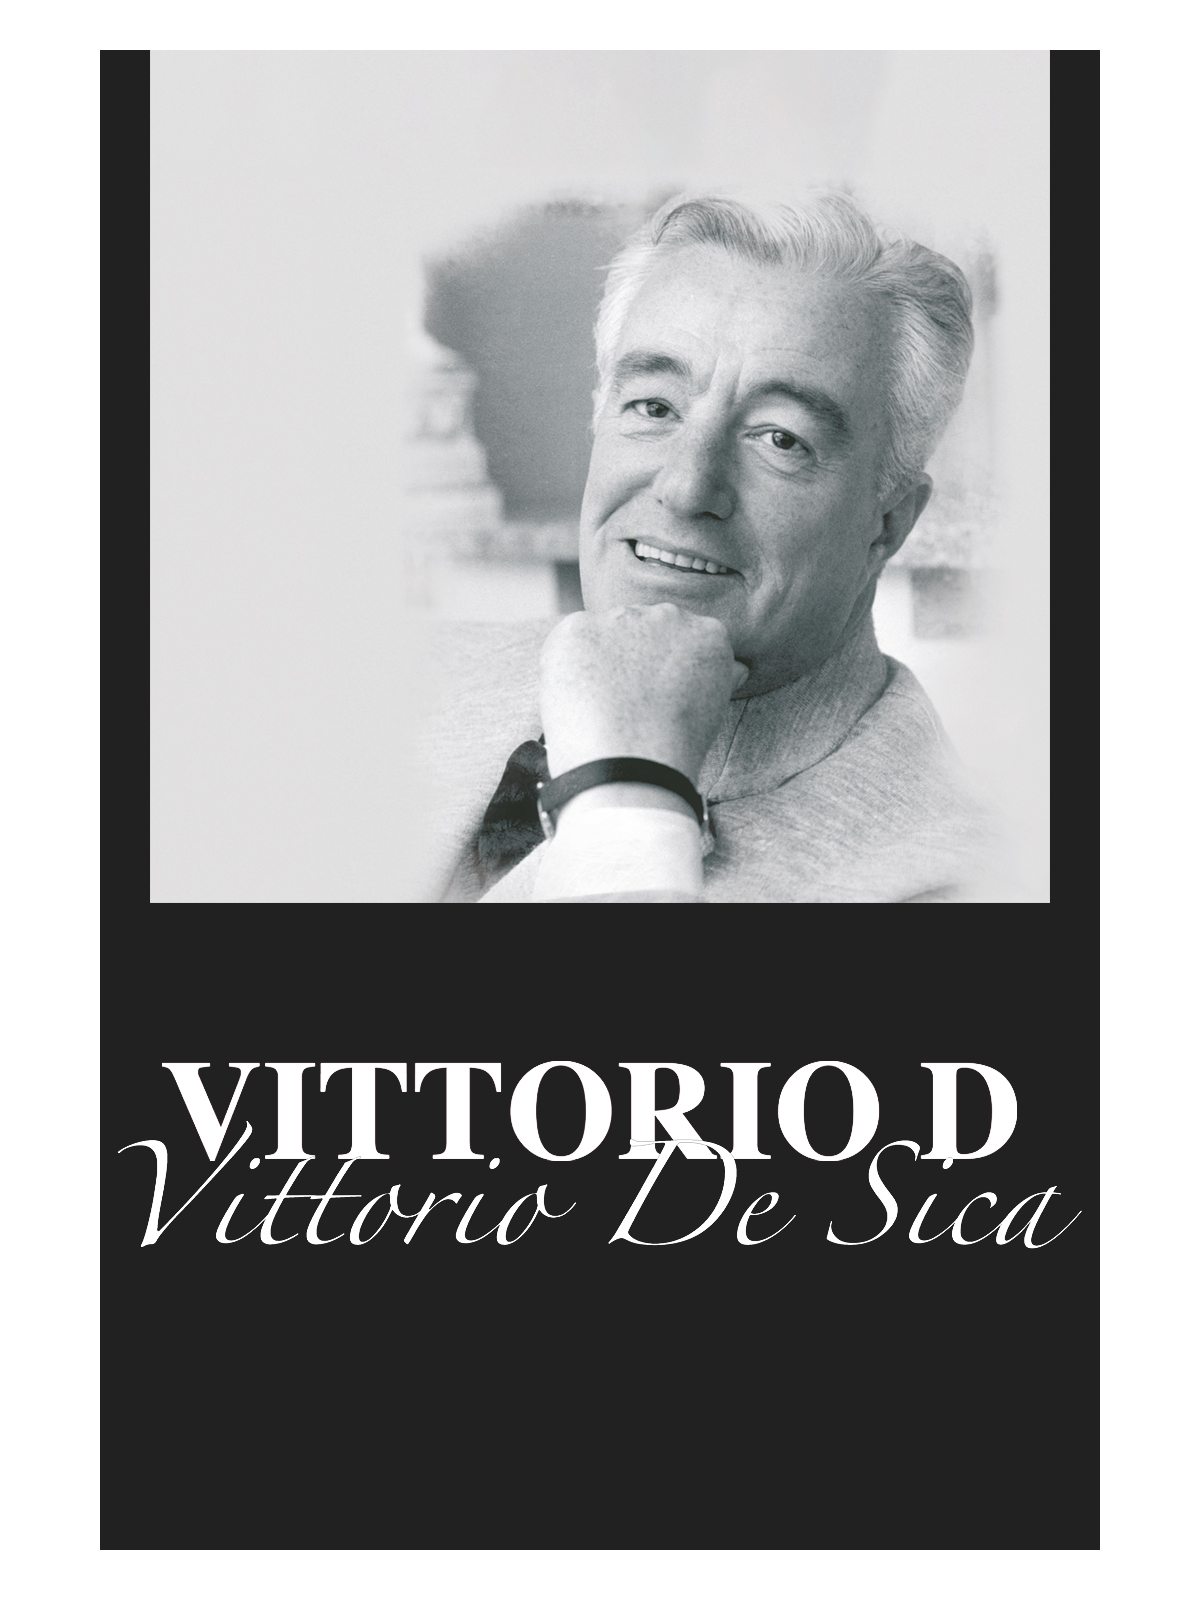 Vittorio D